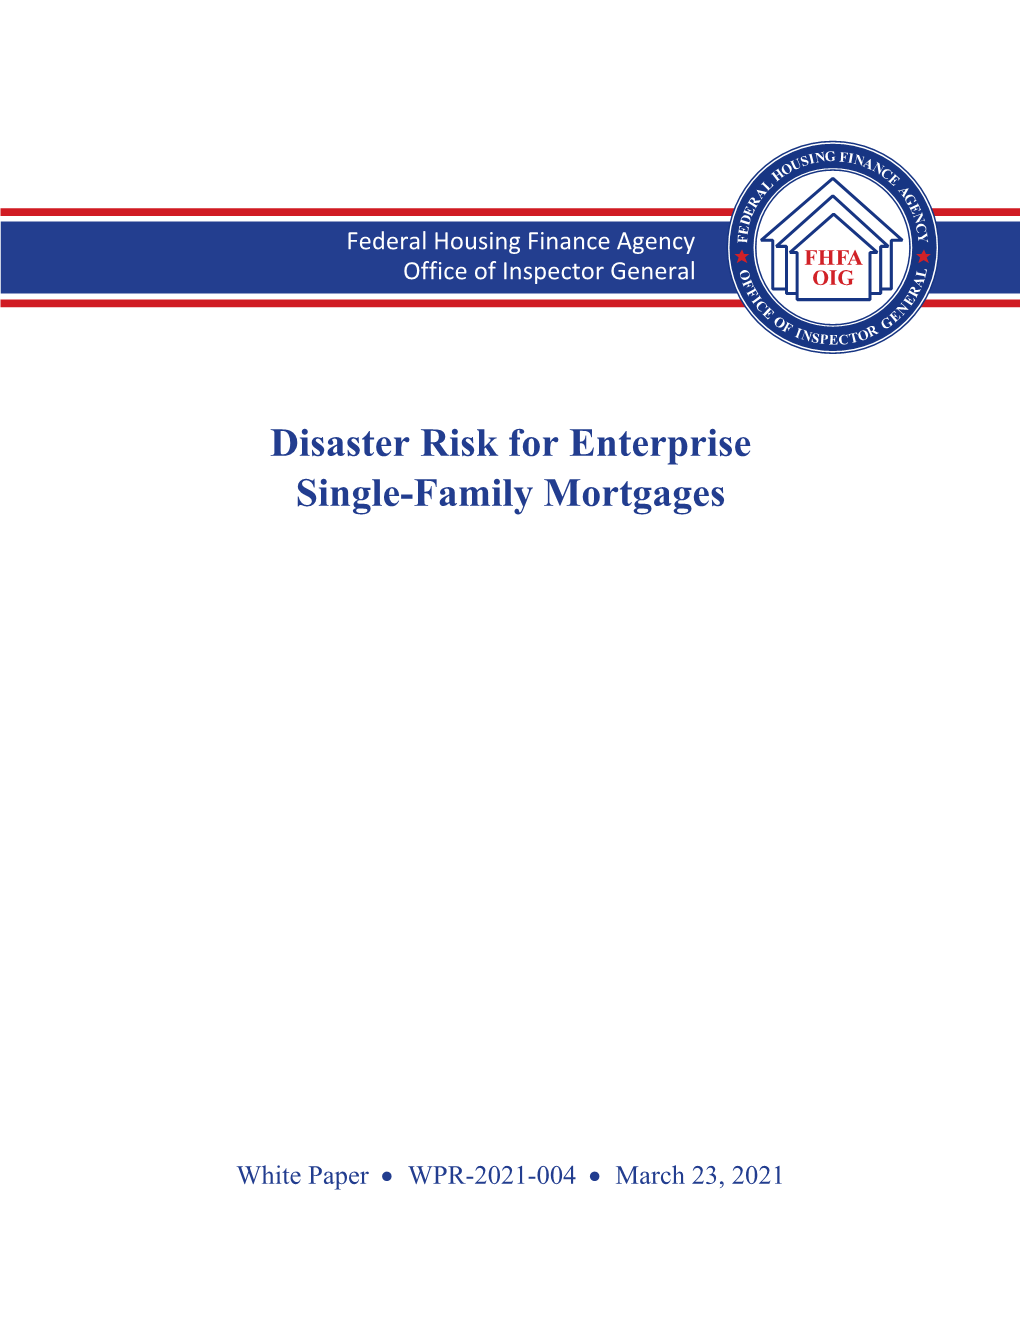 Disaster Risk for Enterprise Single-Family Mortgages